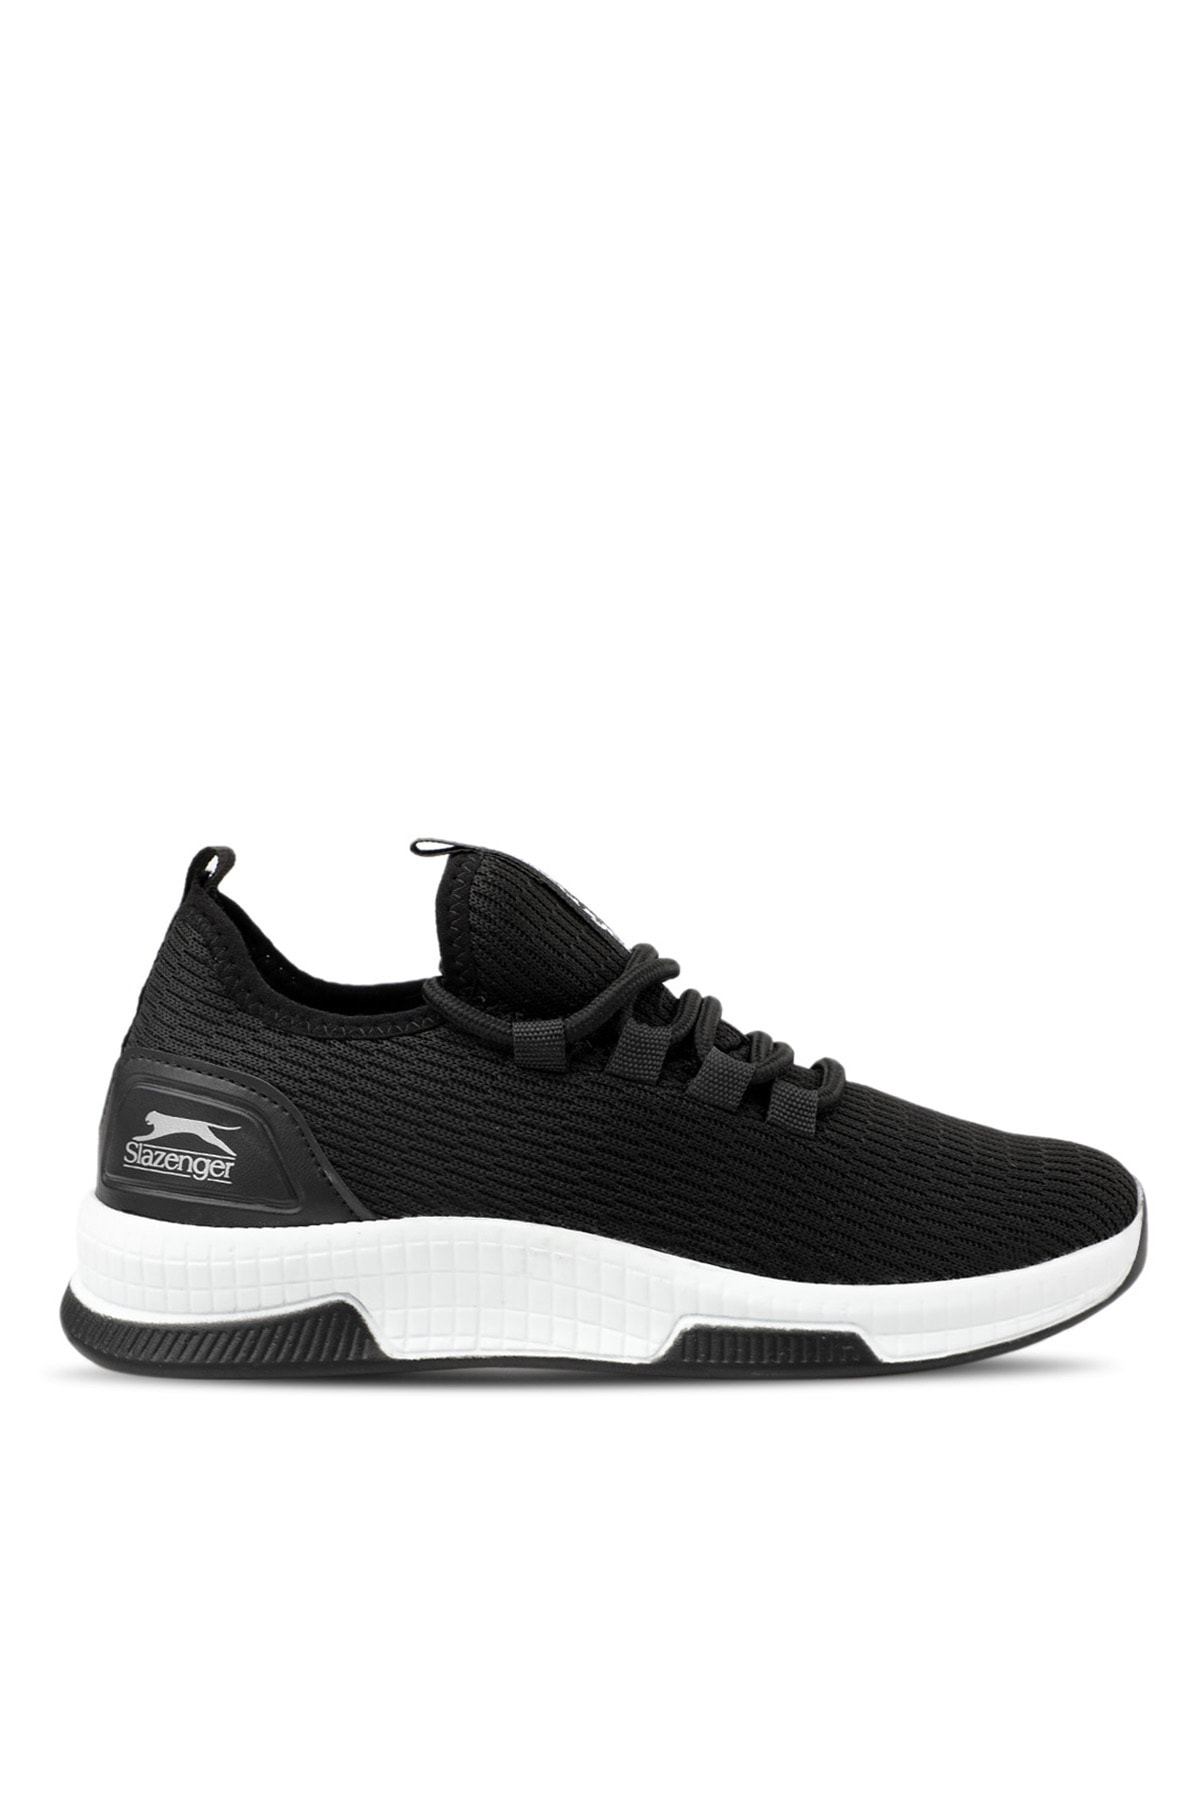 Levně Slazenger Agenda Sneaker Men's Shoes Black / White